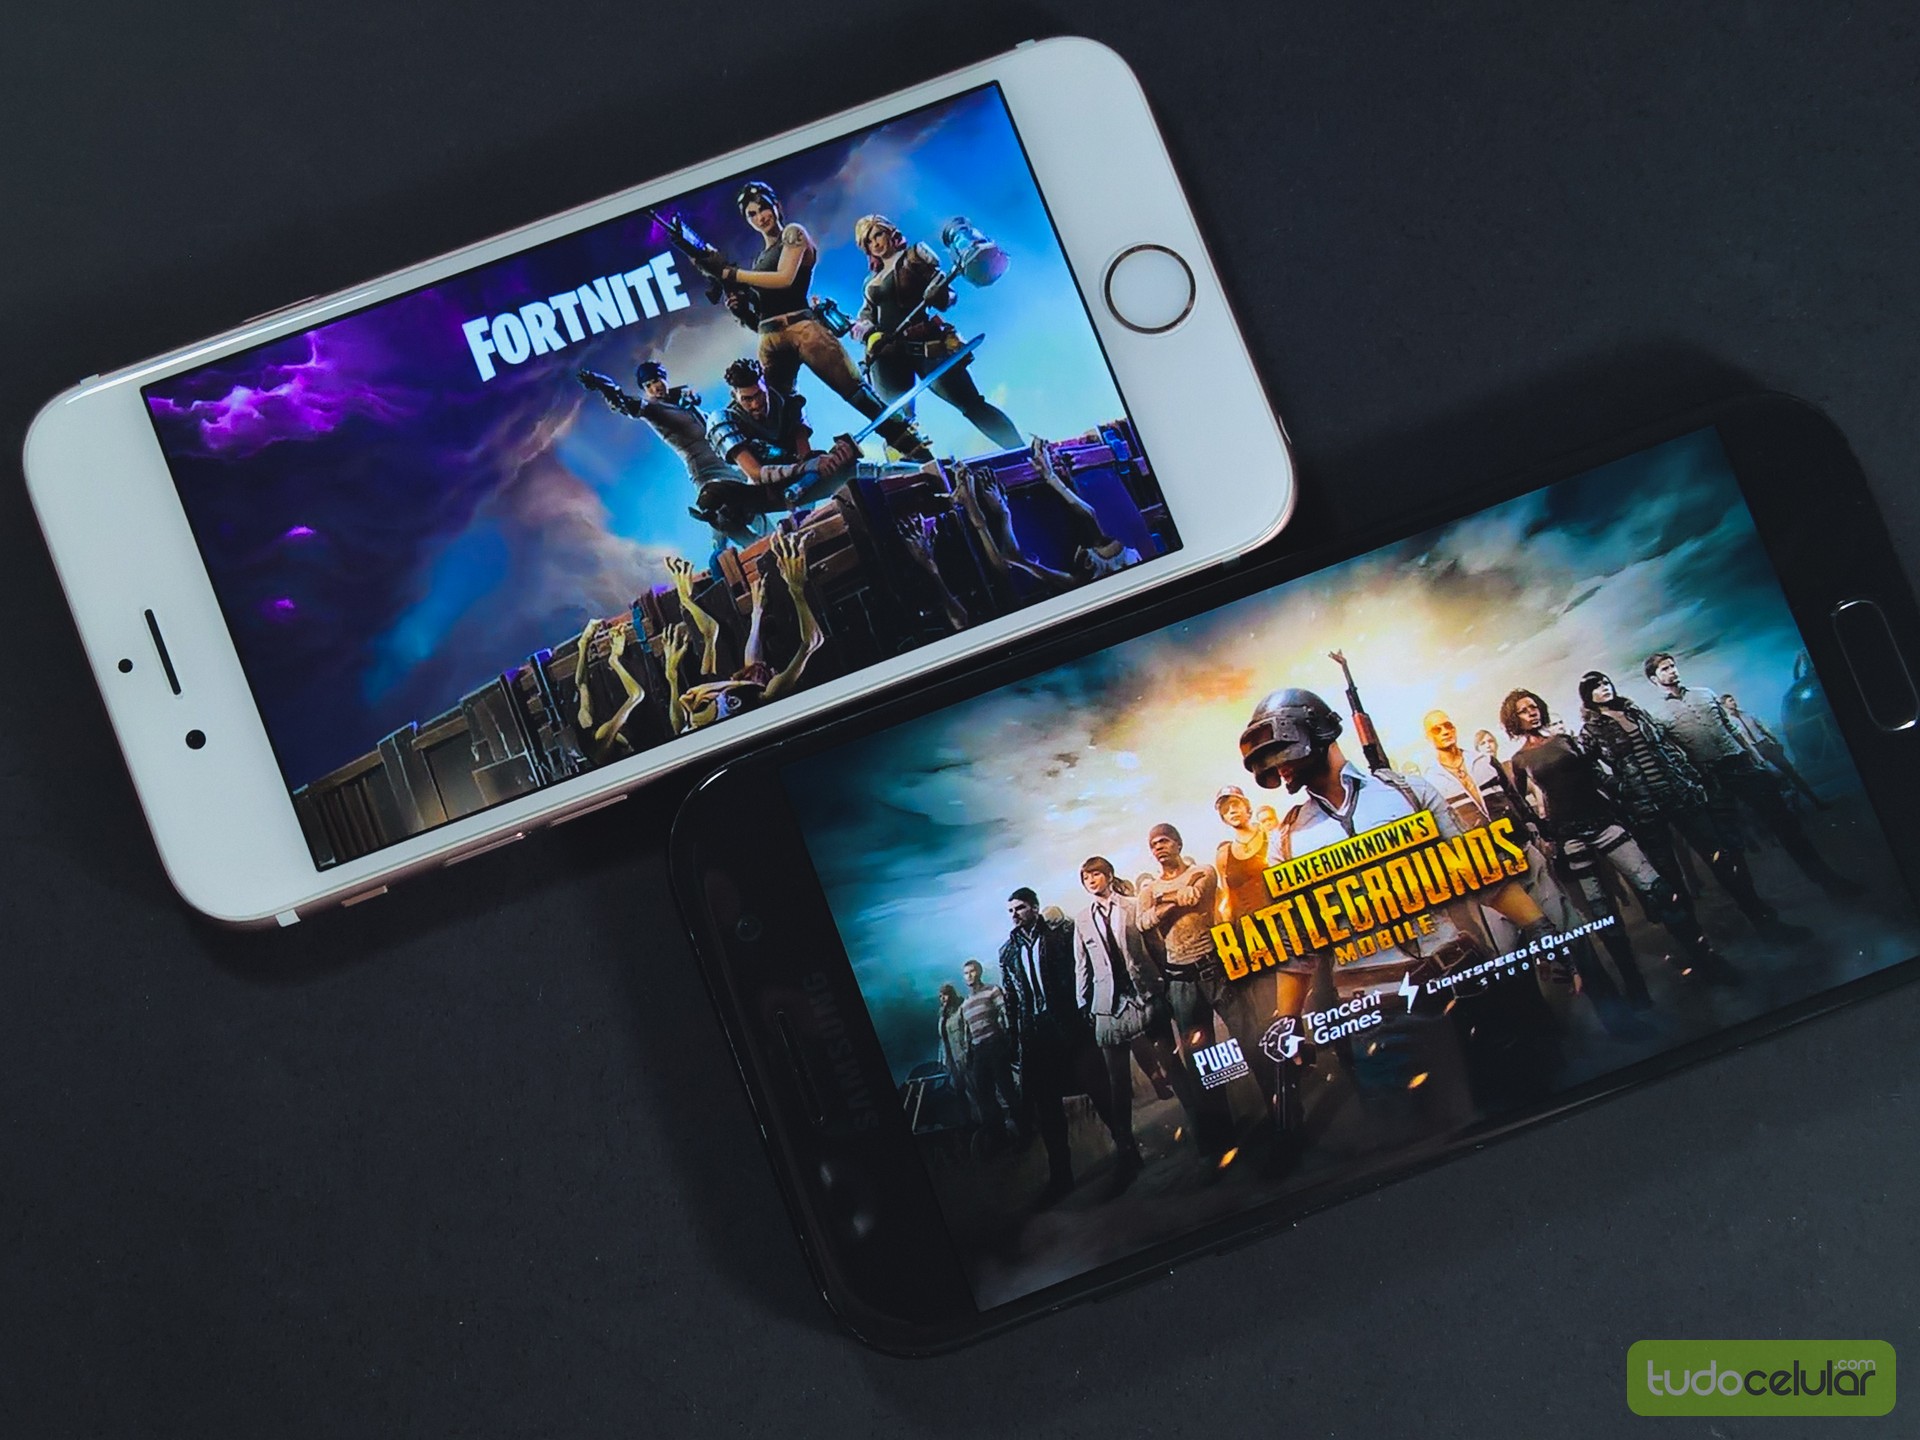 Fortnite, PUBG: veja os melhores jogos de tiro para celular de 2018